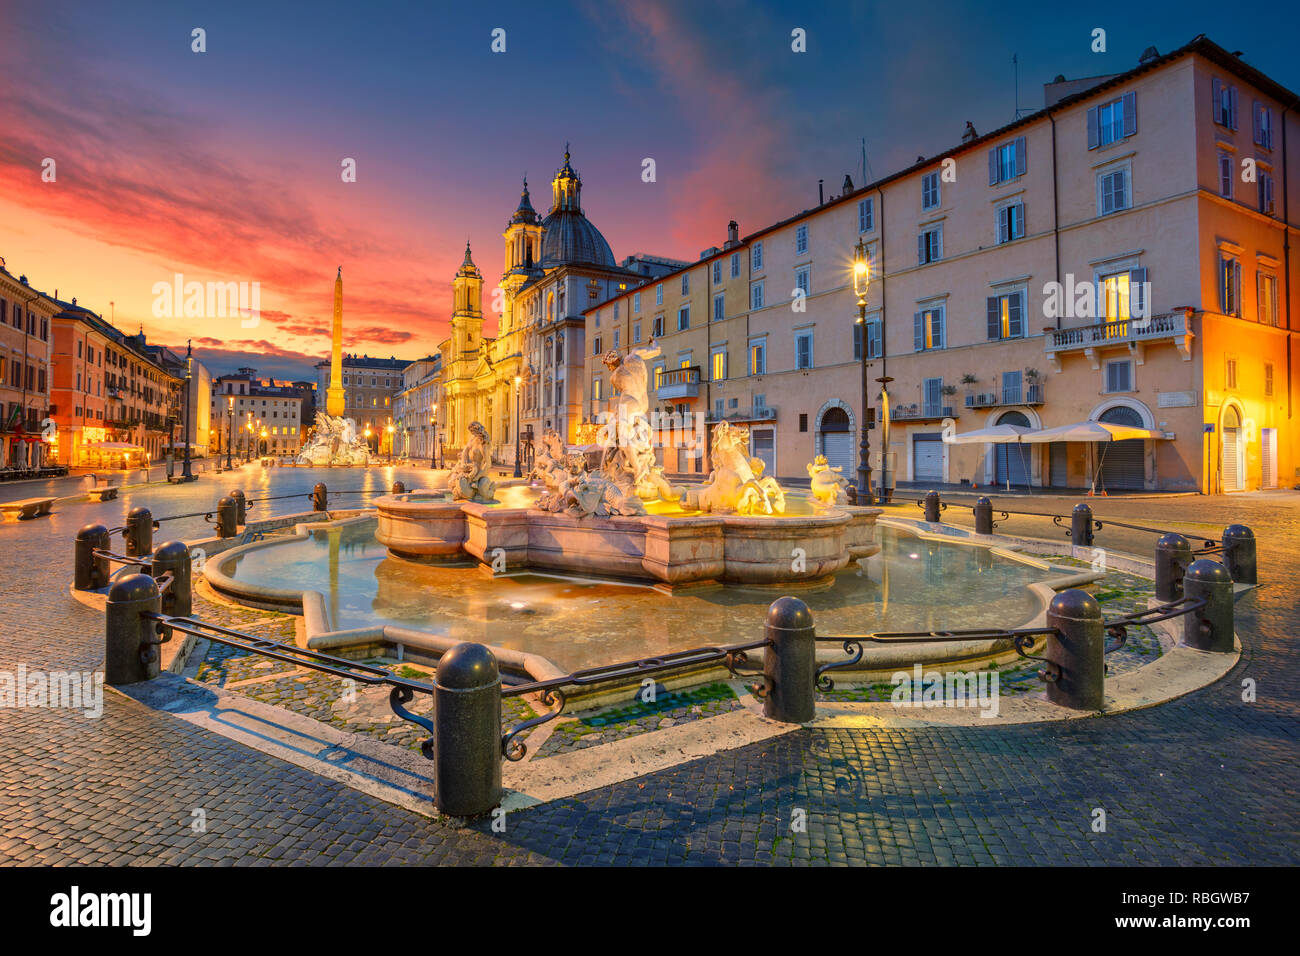 Roma. Cityscape immagine di Piazza Navona, Roma con la fontana del Nettuno durante la bellissima alba. Foto Stock